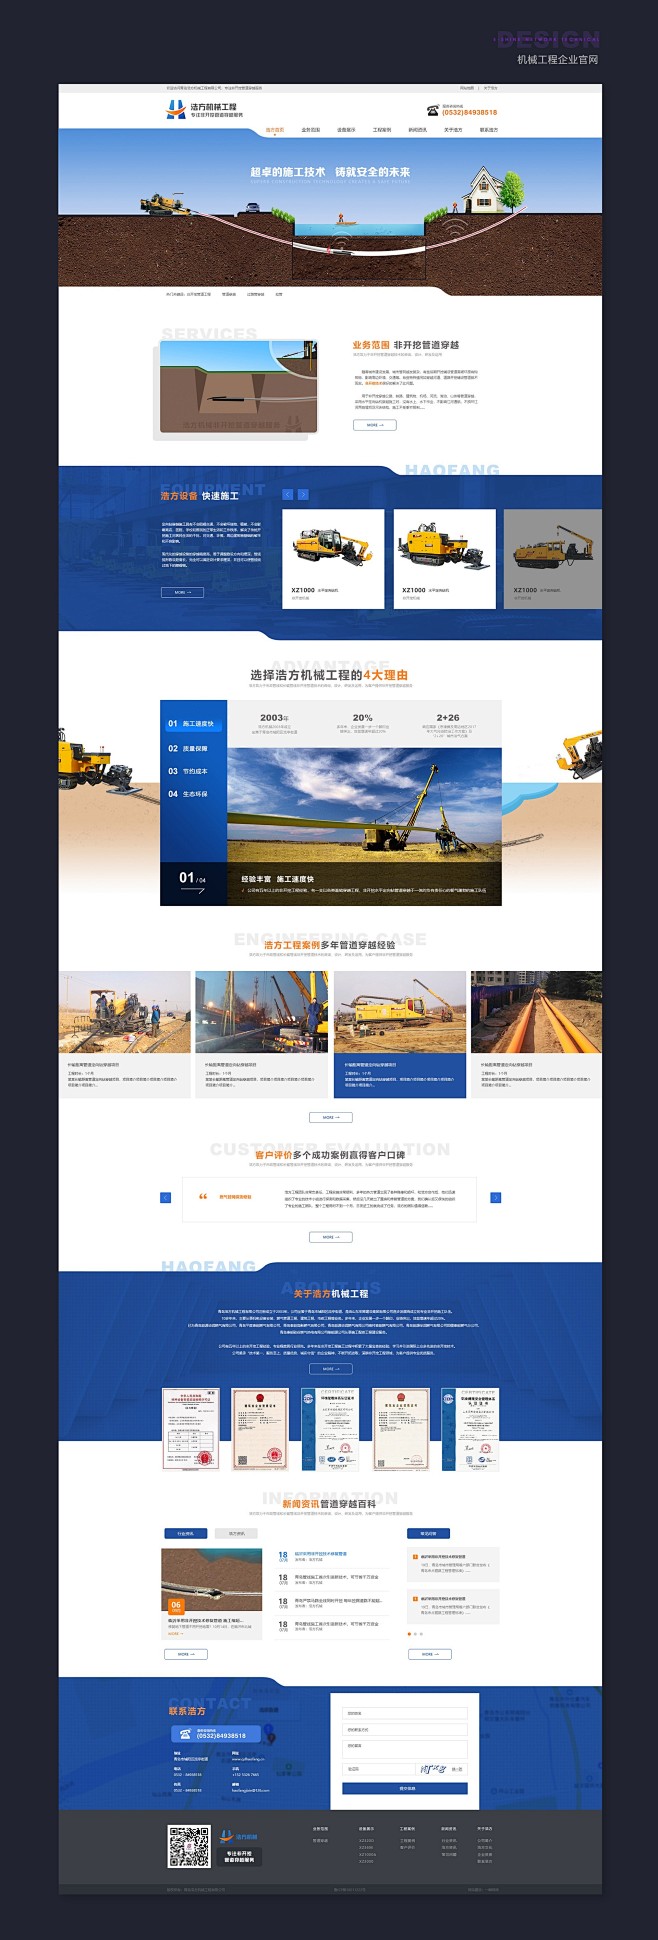 几个工业工程类营销网站_王琳_【68De...